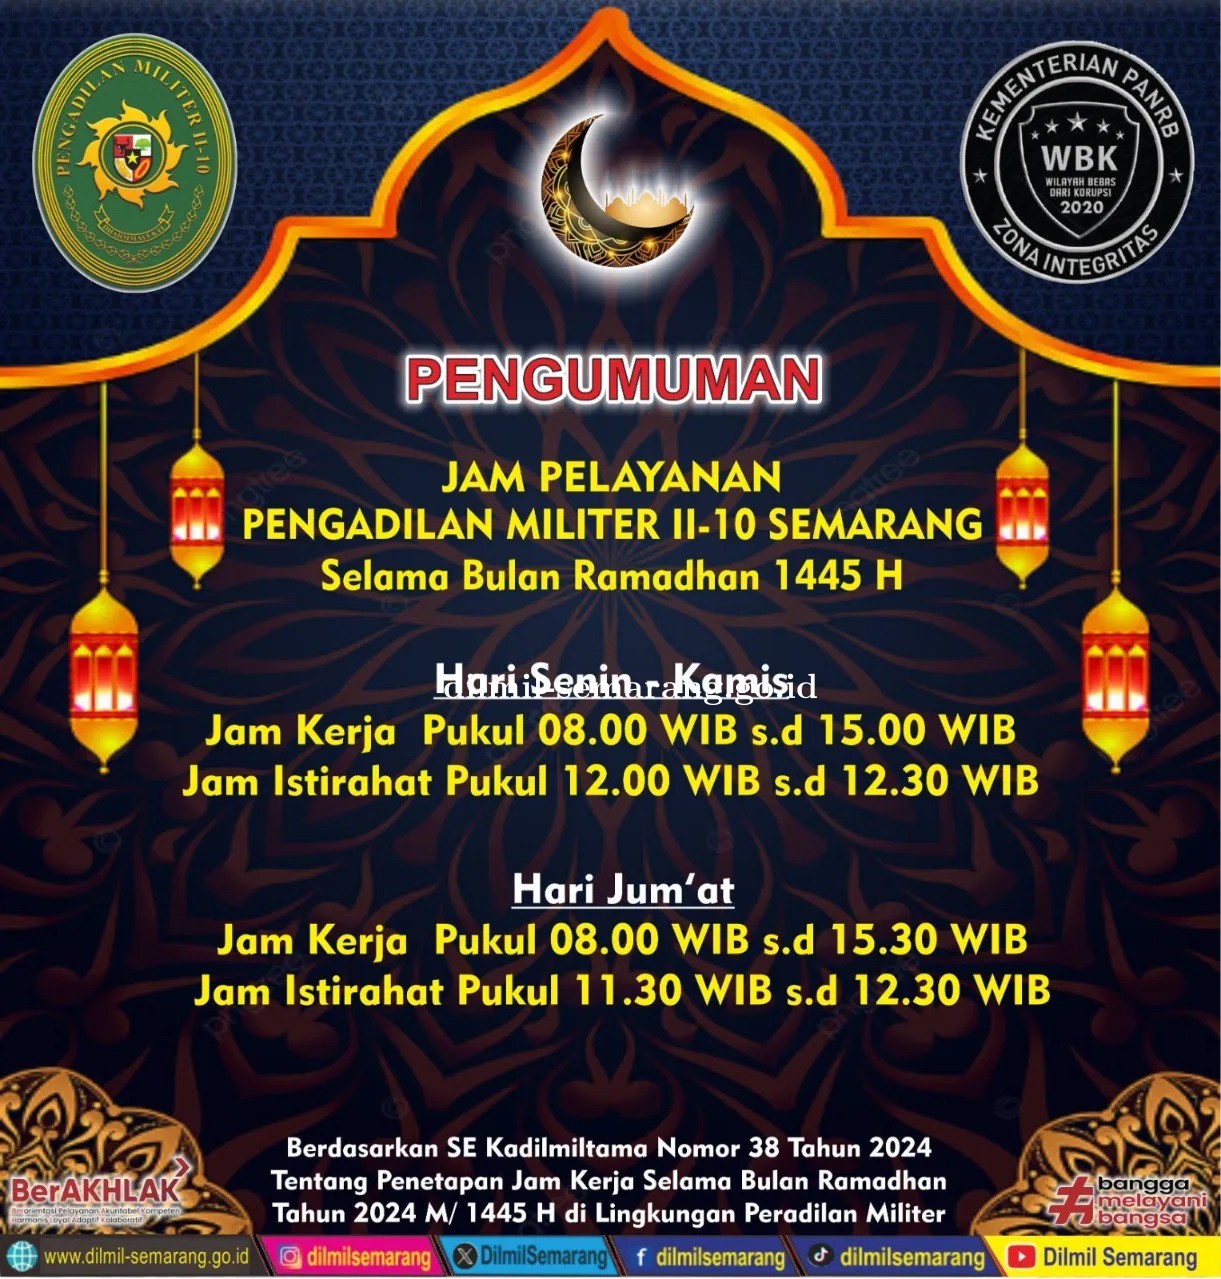  Jam pelayanan Pengadilan Militer II-10 Semarang selama bulan Ramadhan